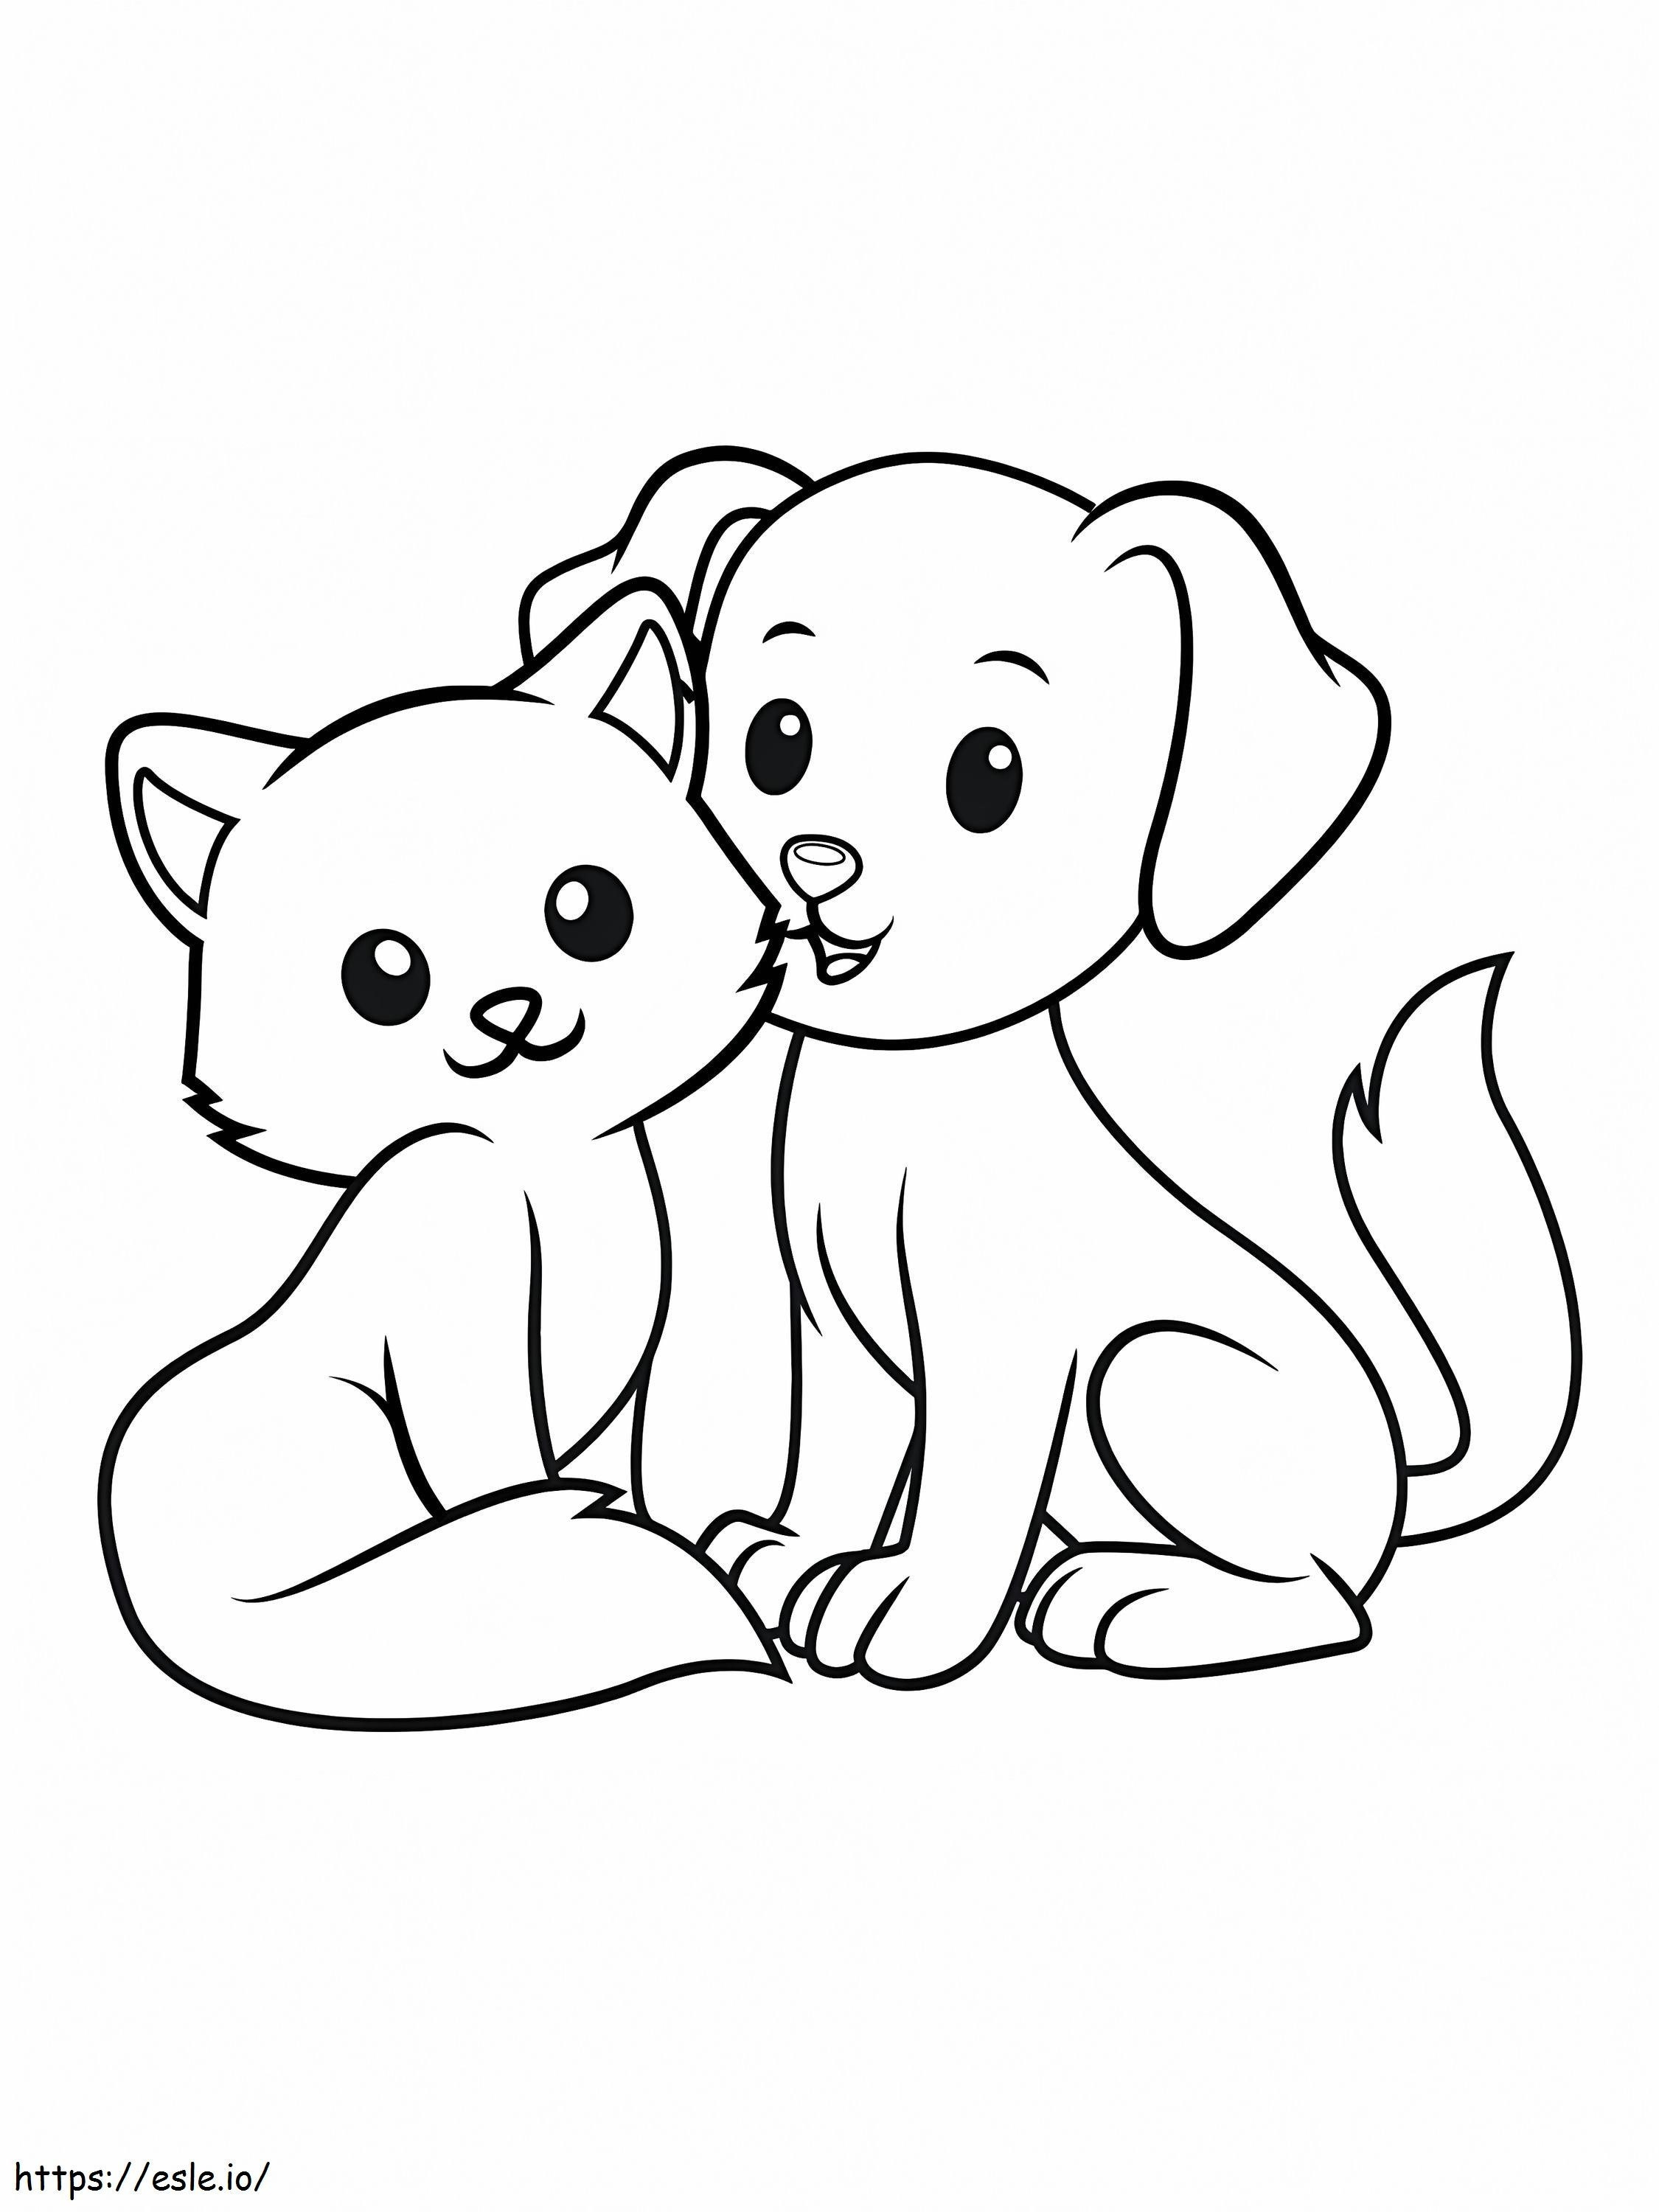 Cão e gato fáceis para colorir